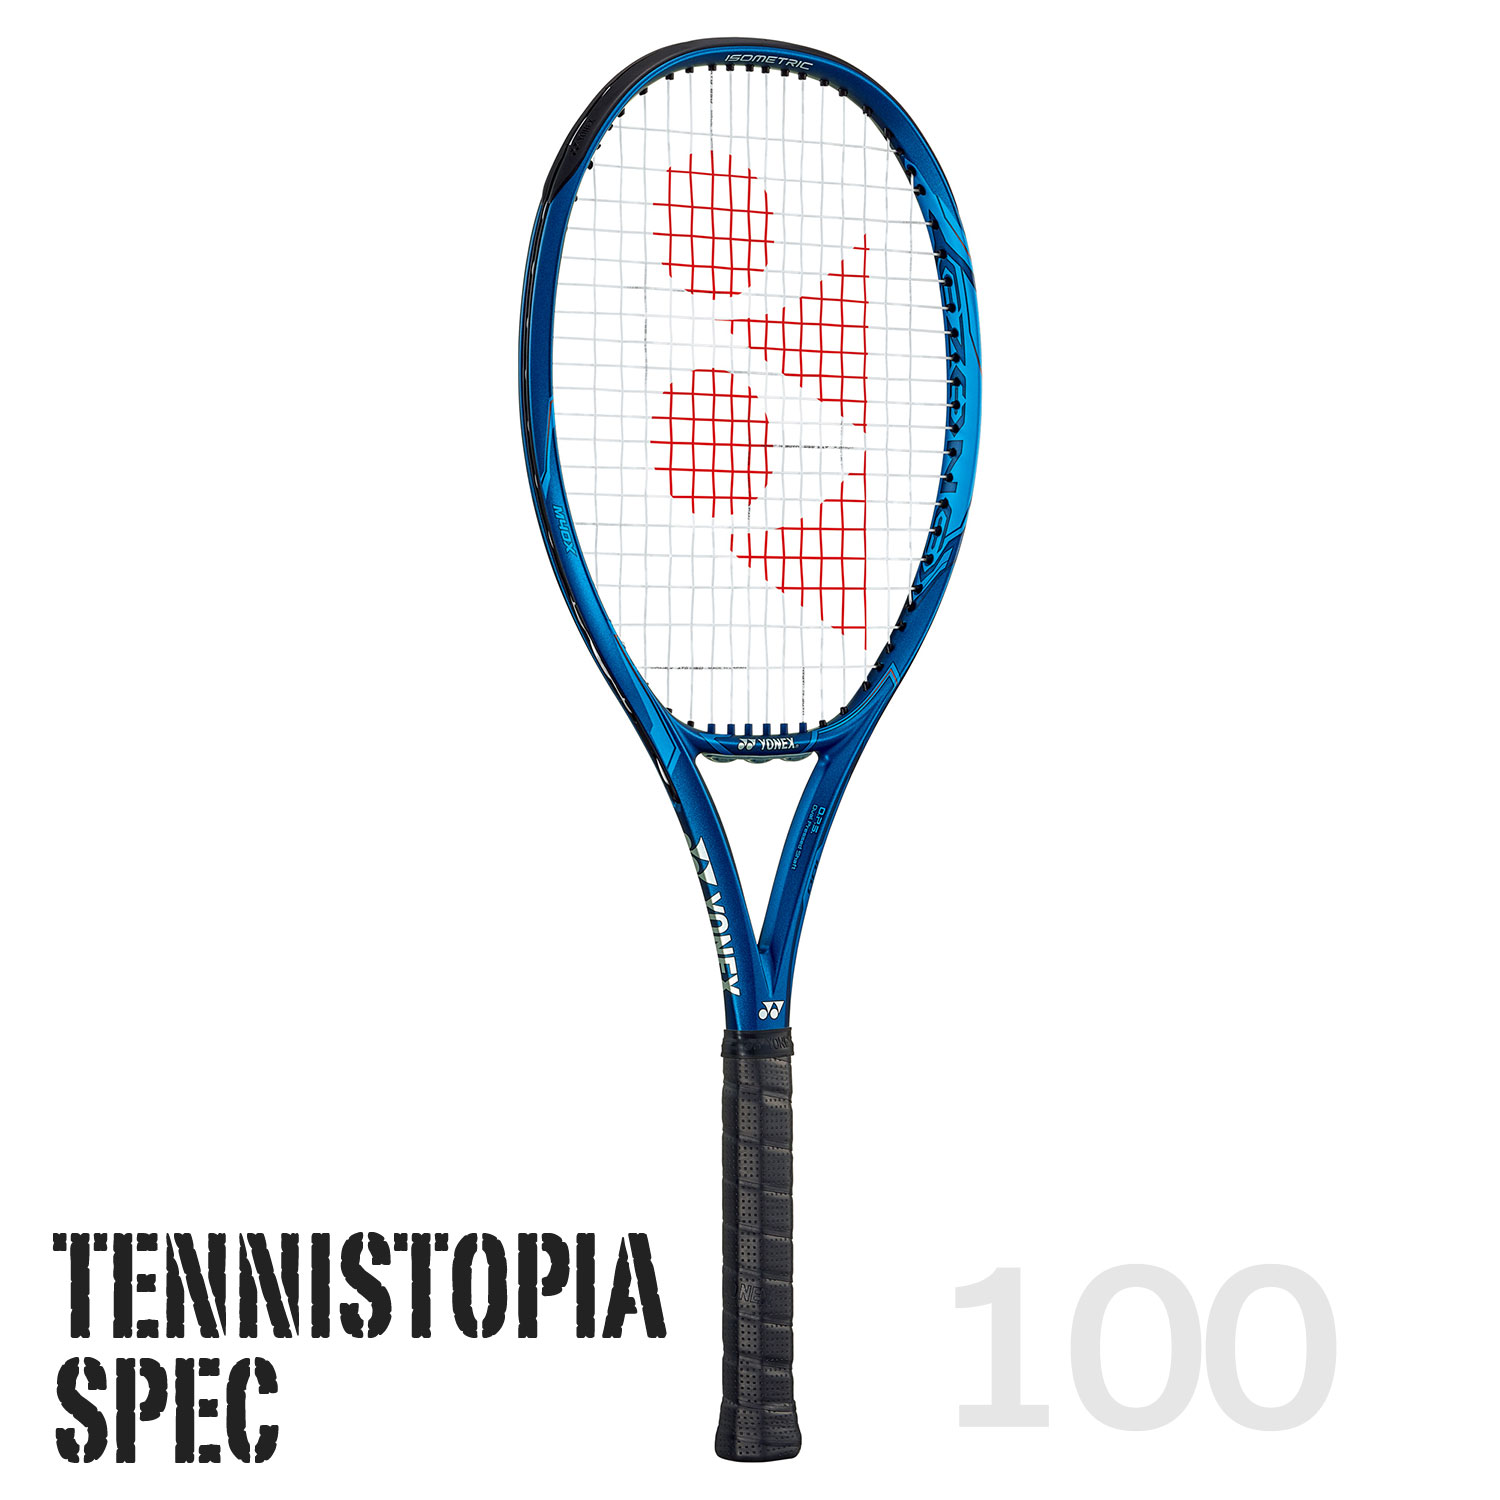 ヨネックスEZONE100 テニストピアスペックⅡ-